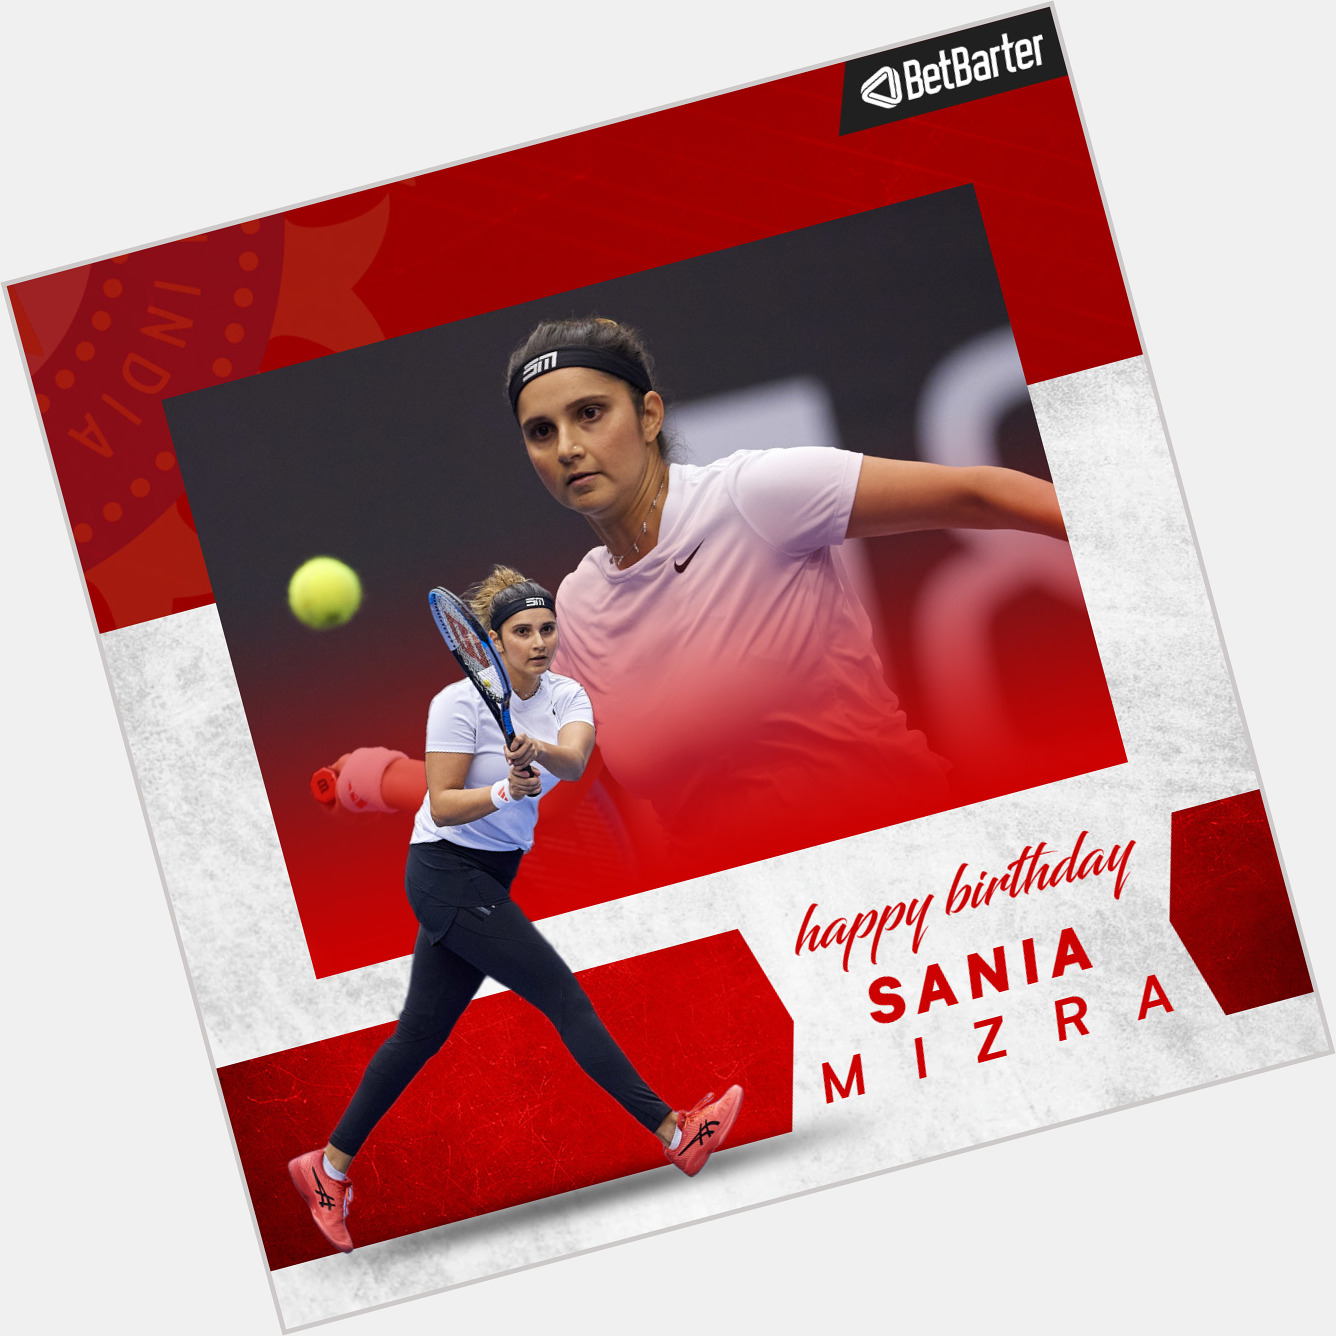 Wishing Sania Mirza a Very Happy Birthday      